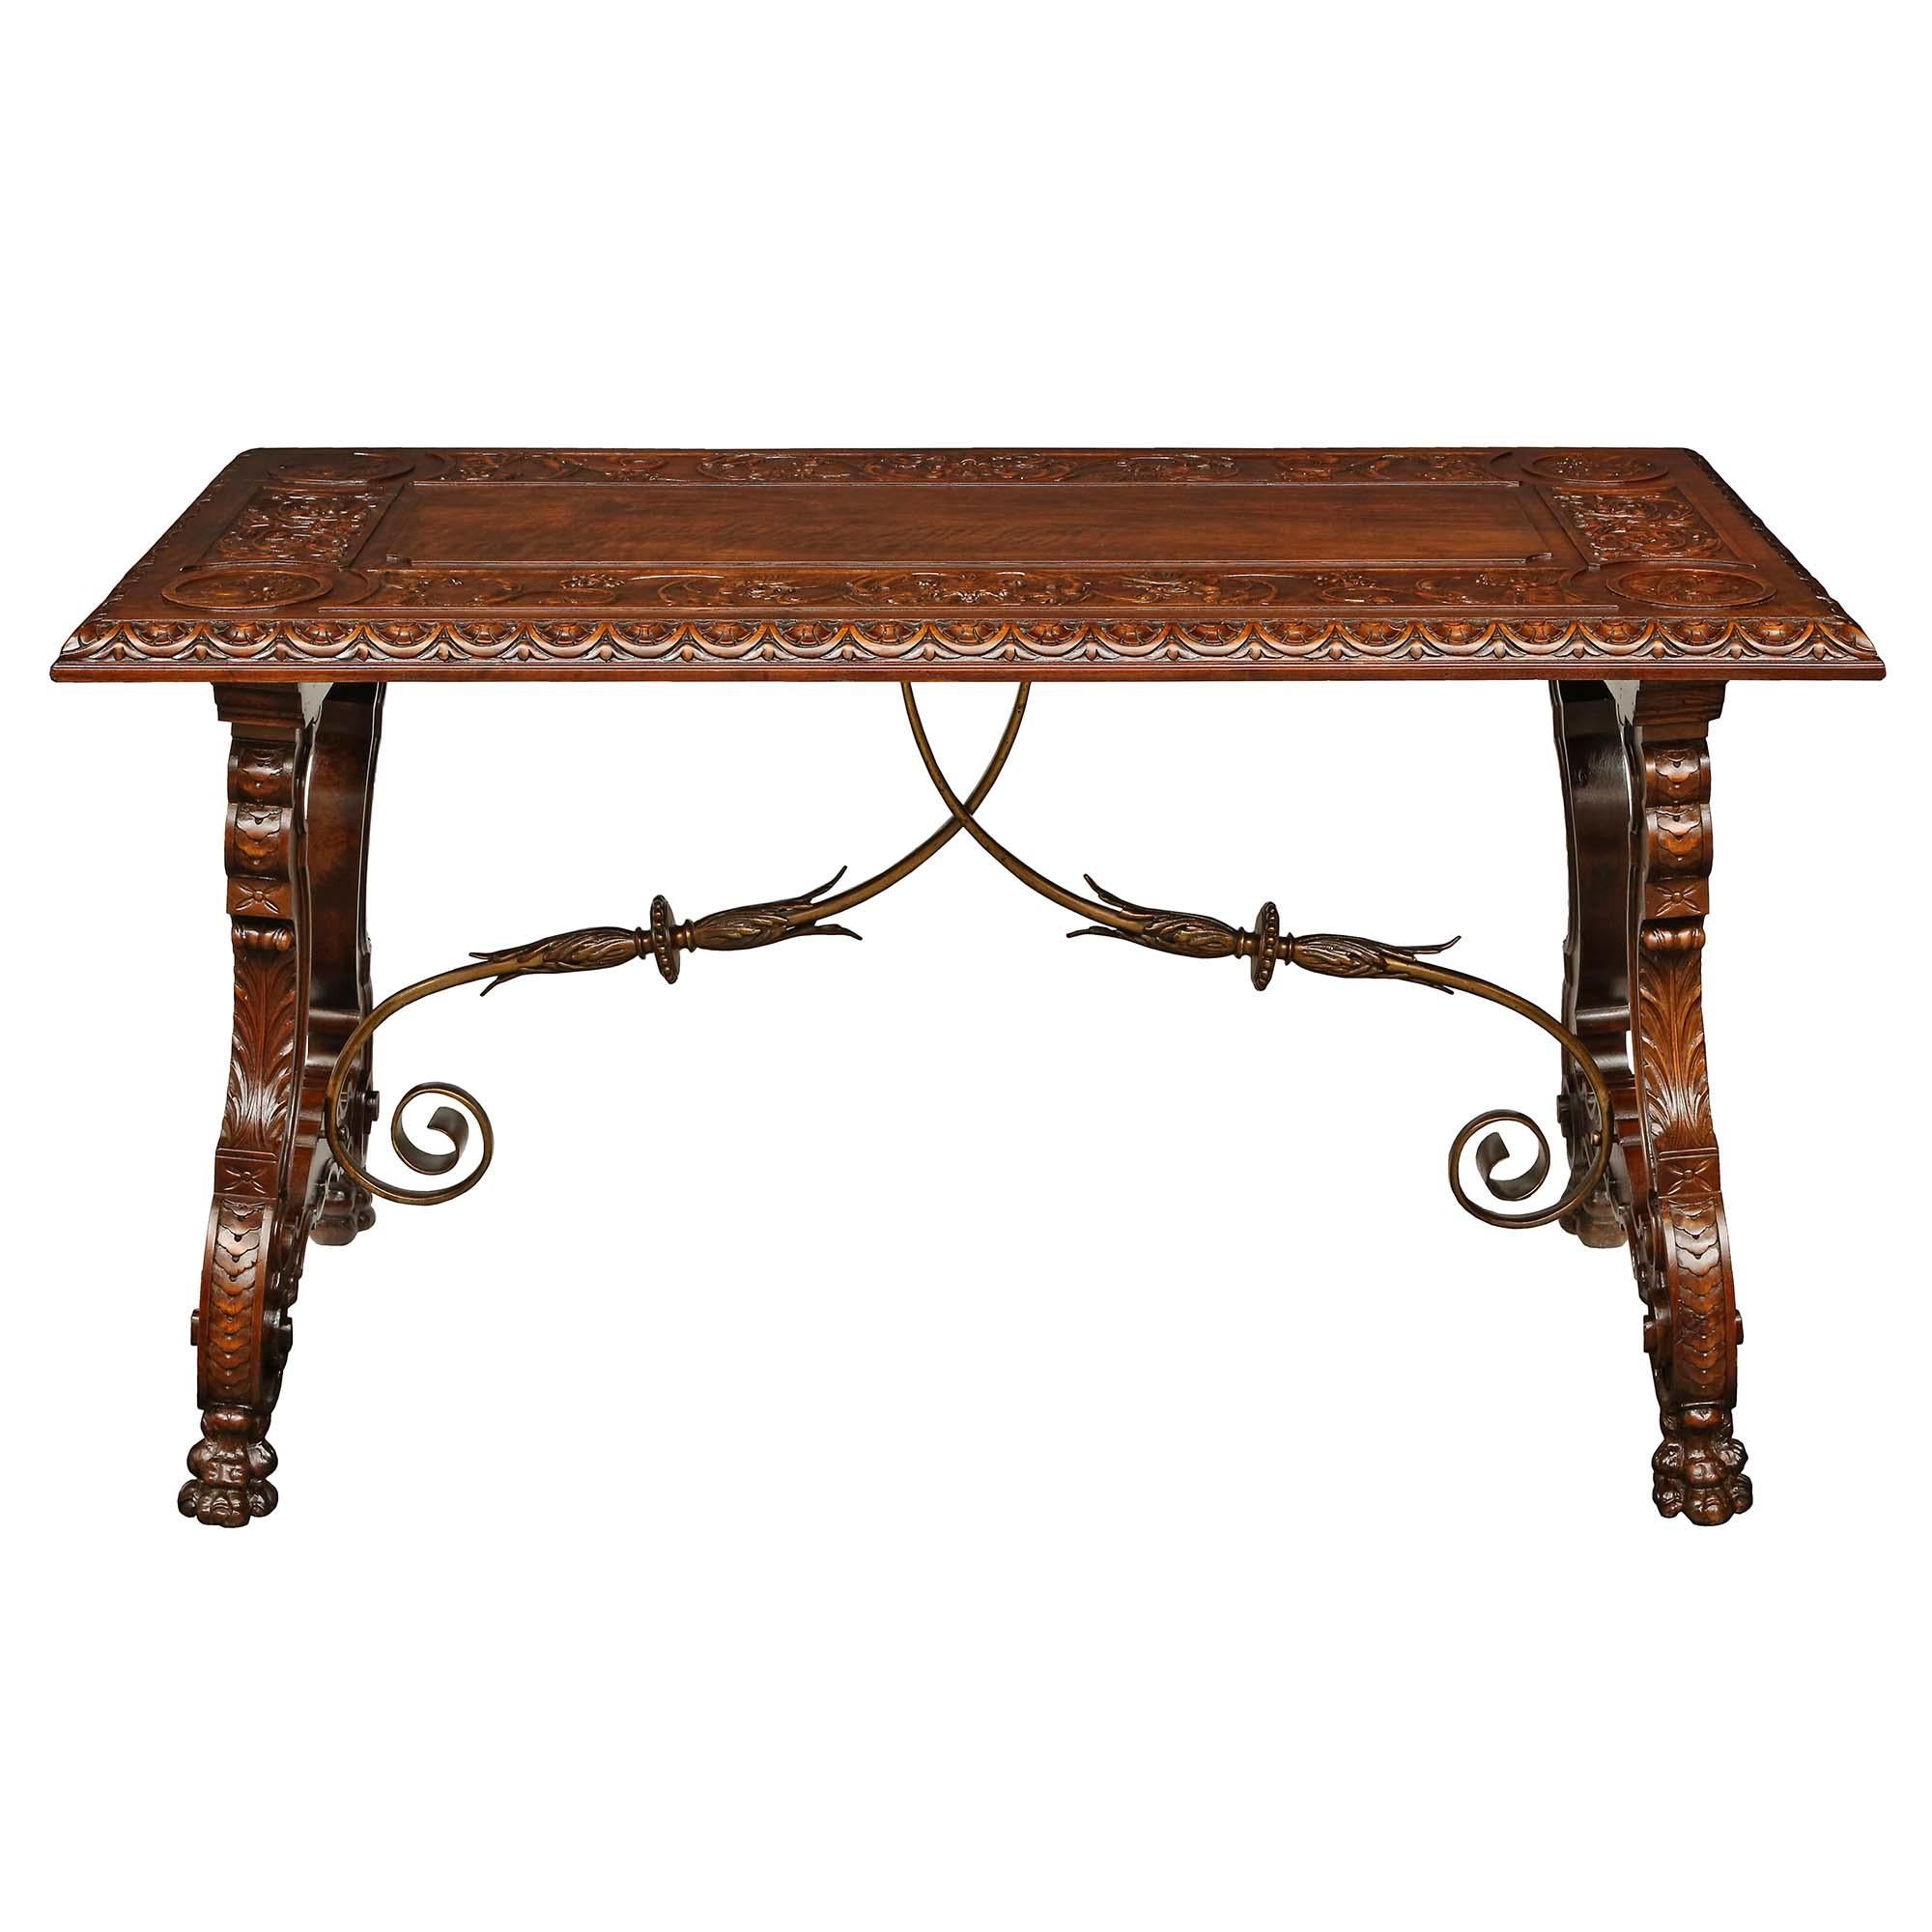 Une belle table à tréteaux en noyer de style Renaissance espagnole du 19e siècle. La table est surélevée par quatre beaux pieds à pattes richement sculptés sous les impressionnants supports à volutes avec des motifs floraux finement sculptés